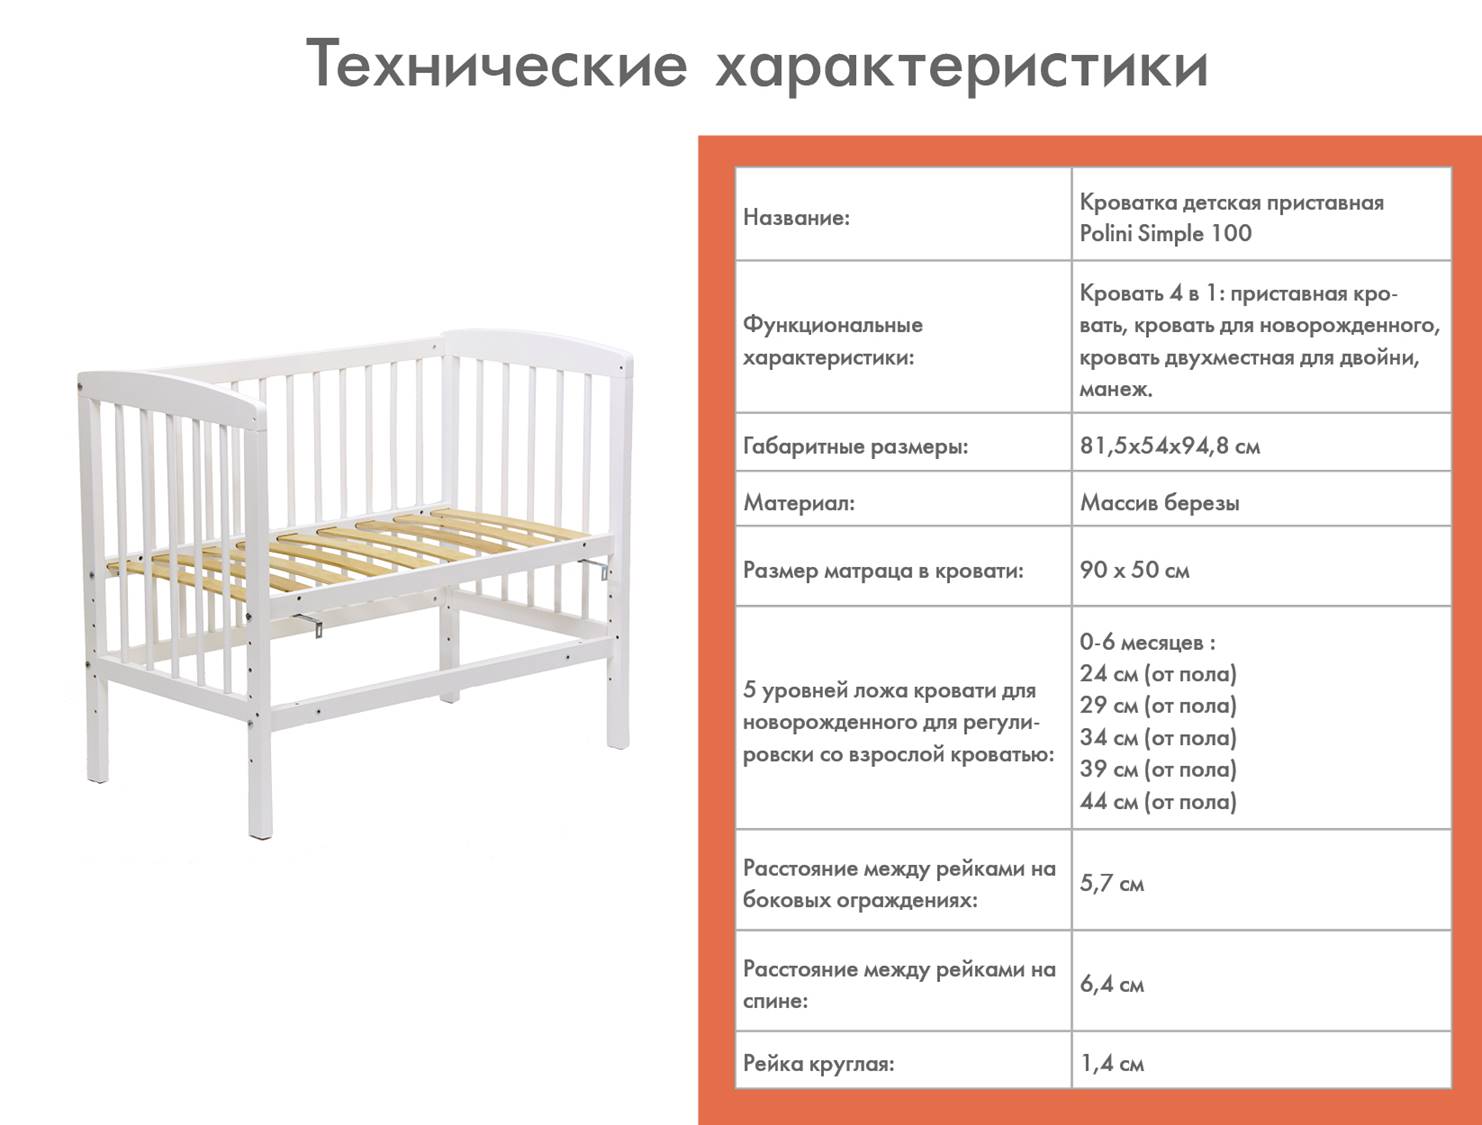 Как оборудовать спальное место для младенца